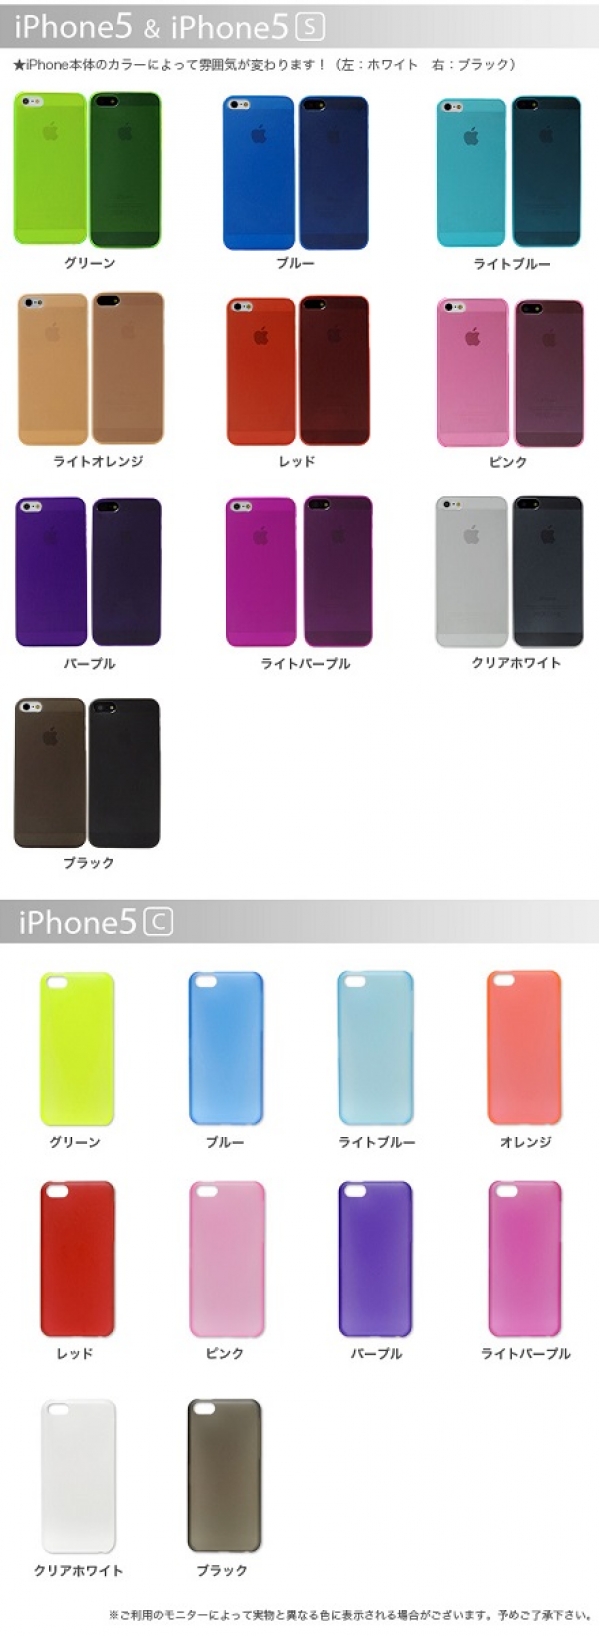 【即納】アイフォン スマホ スマートフォン iPhone5s iPhone5c iPhone5 カバー 薄いうすい スリム ハードケース シンプル0.5mm 薄型クリアケース ハードケース 全10色  sp0374【柄：ライトブルー】【機種：iPhone5s/5c/5】